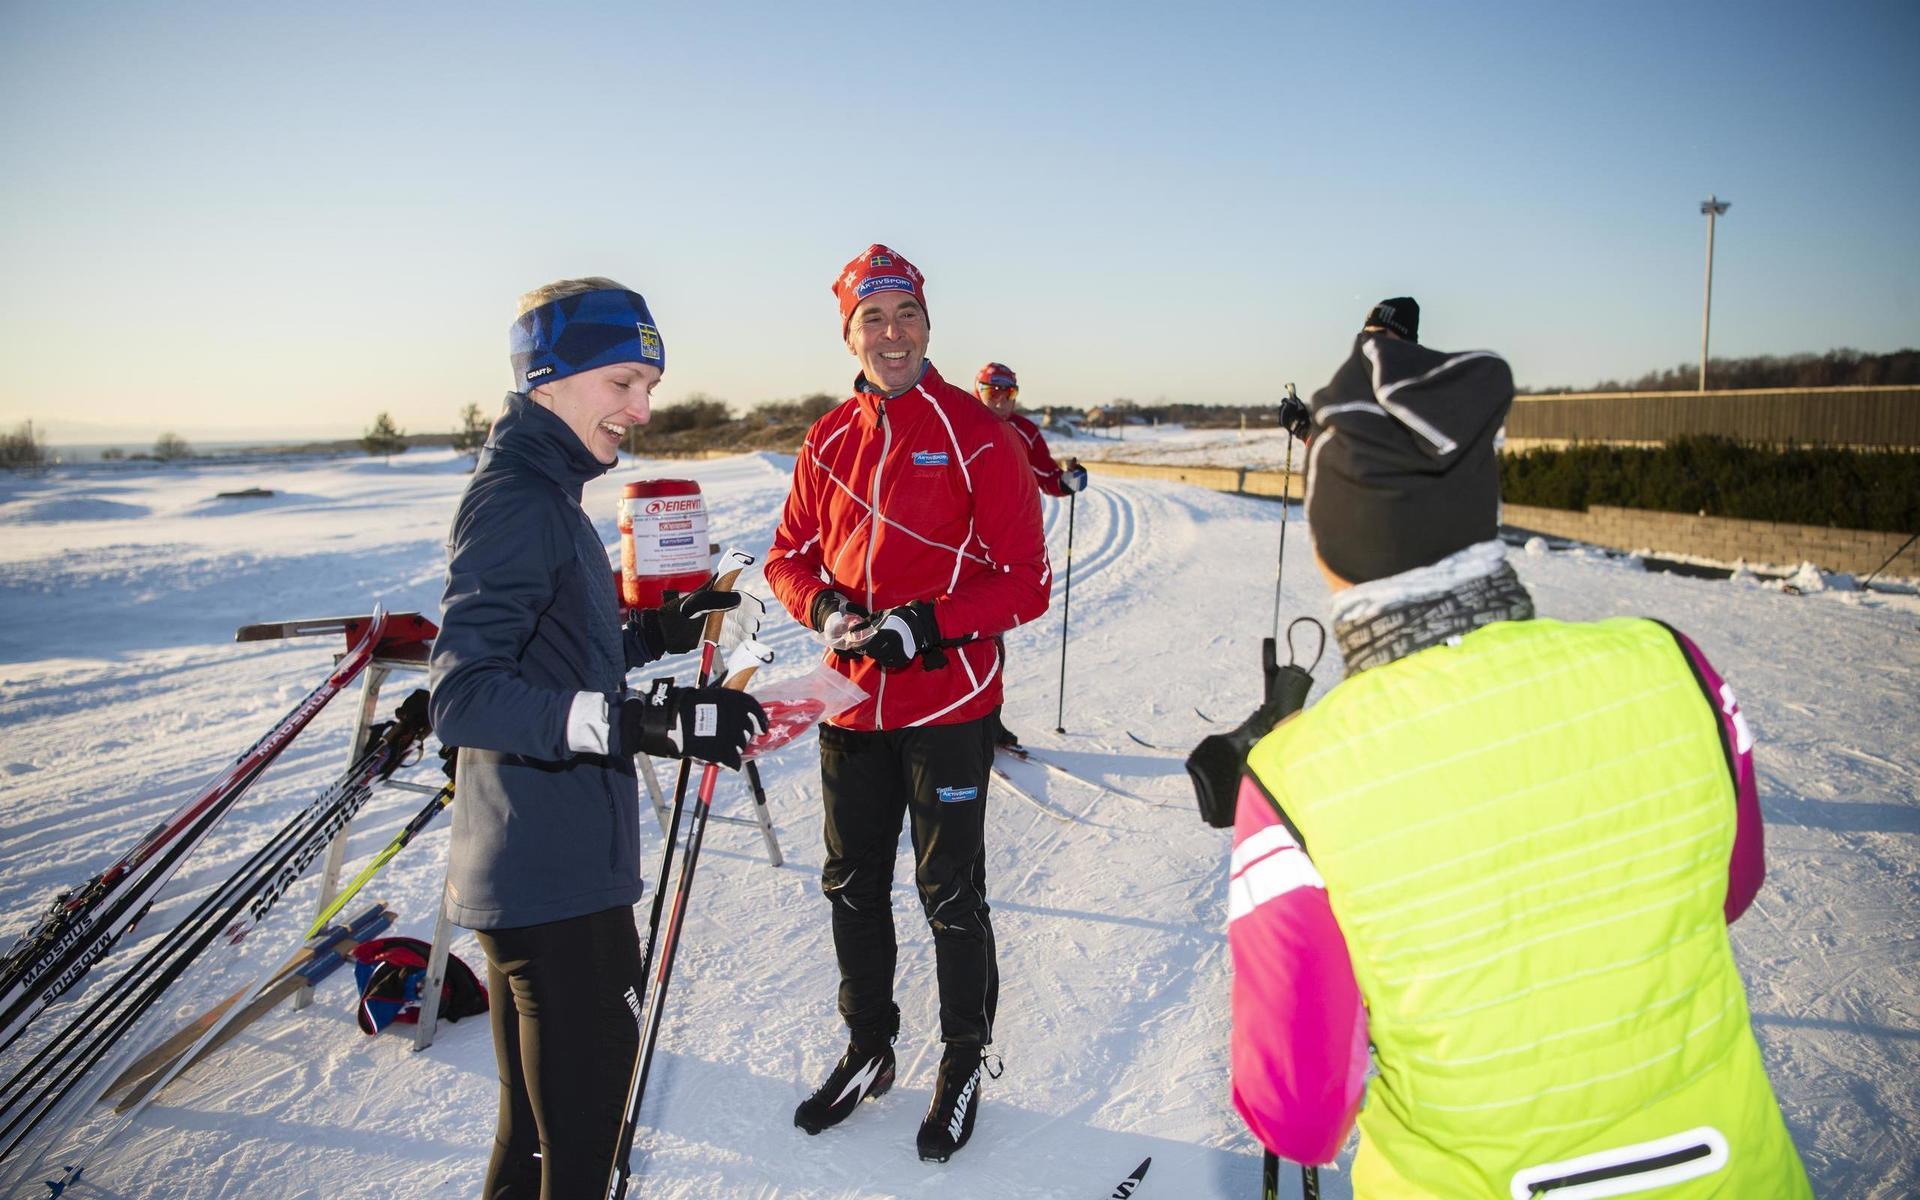 Vasaloppsvinnaren Staffan Larsson är på plats för att lära hallänningarna lite knep för att bli bättre skidåkare. Ringenäs skidarena